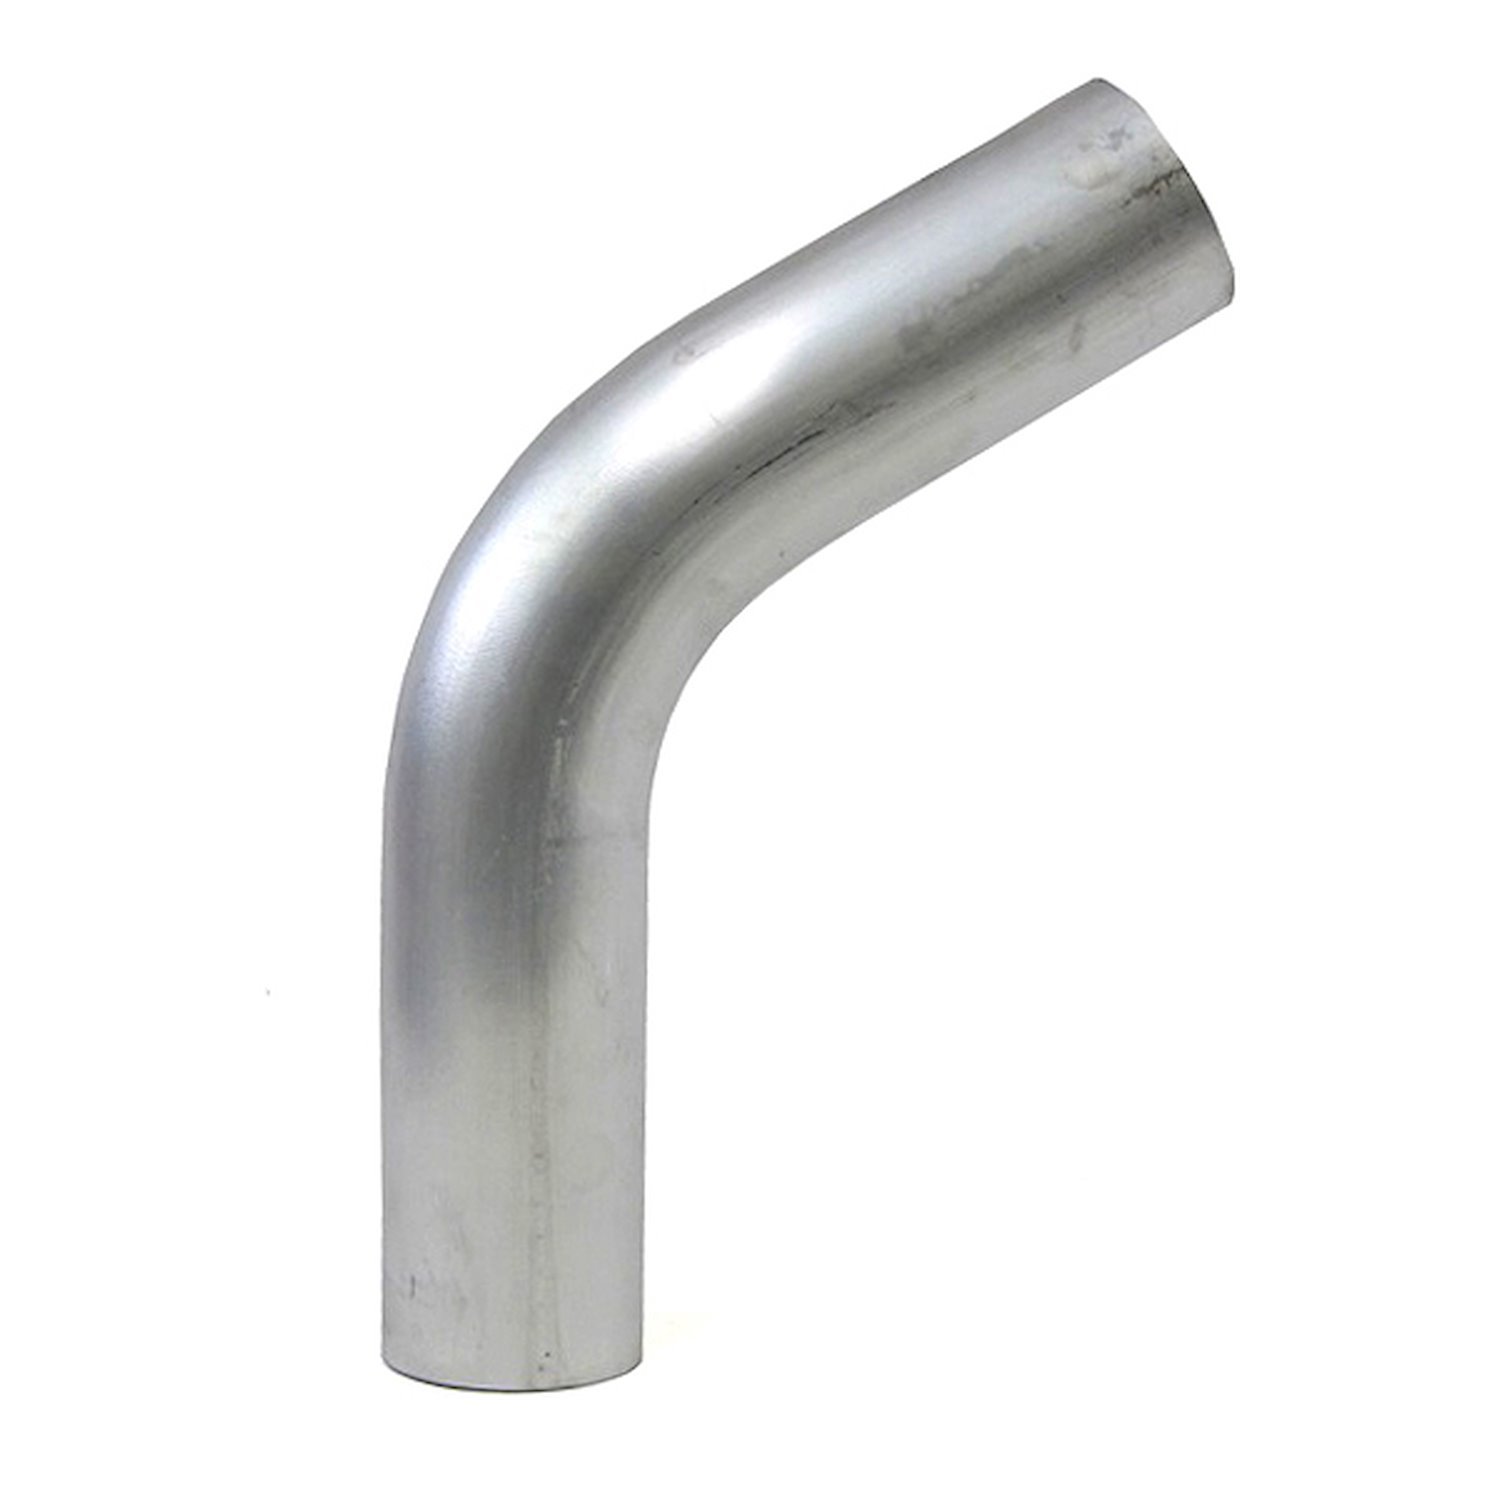 AT60-275-CLR-275 Aluminum Elbow Tube, 6061 Aluminum, 60-Degree Bend Elbow Tubing, 2-3/4 in. OD, Tight Radius, 2-3/4 in. CLR